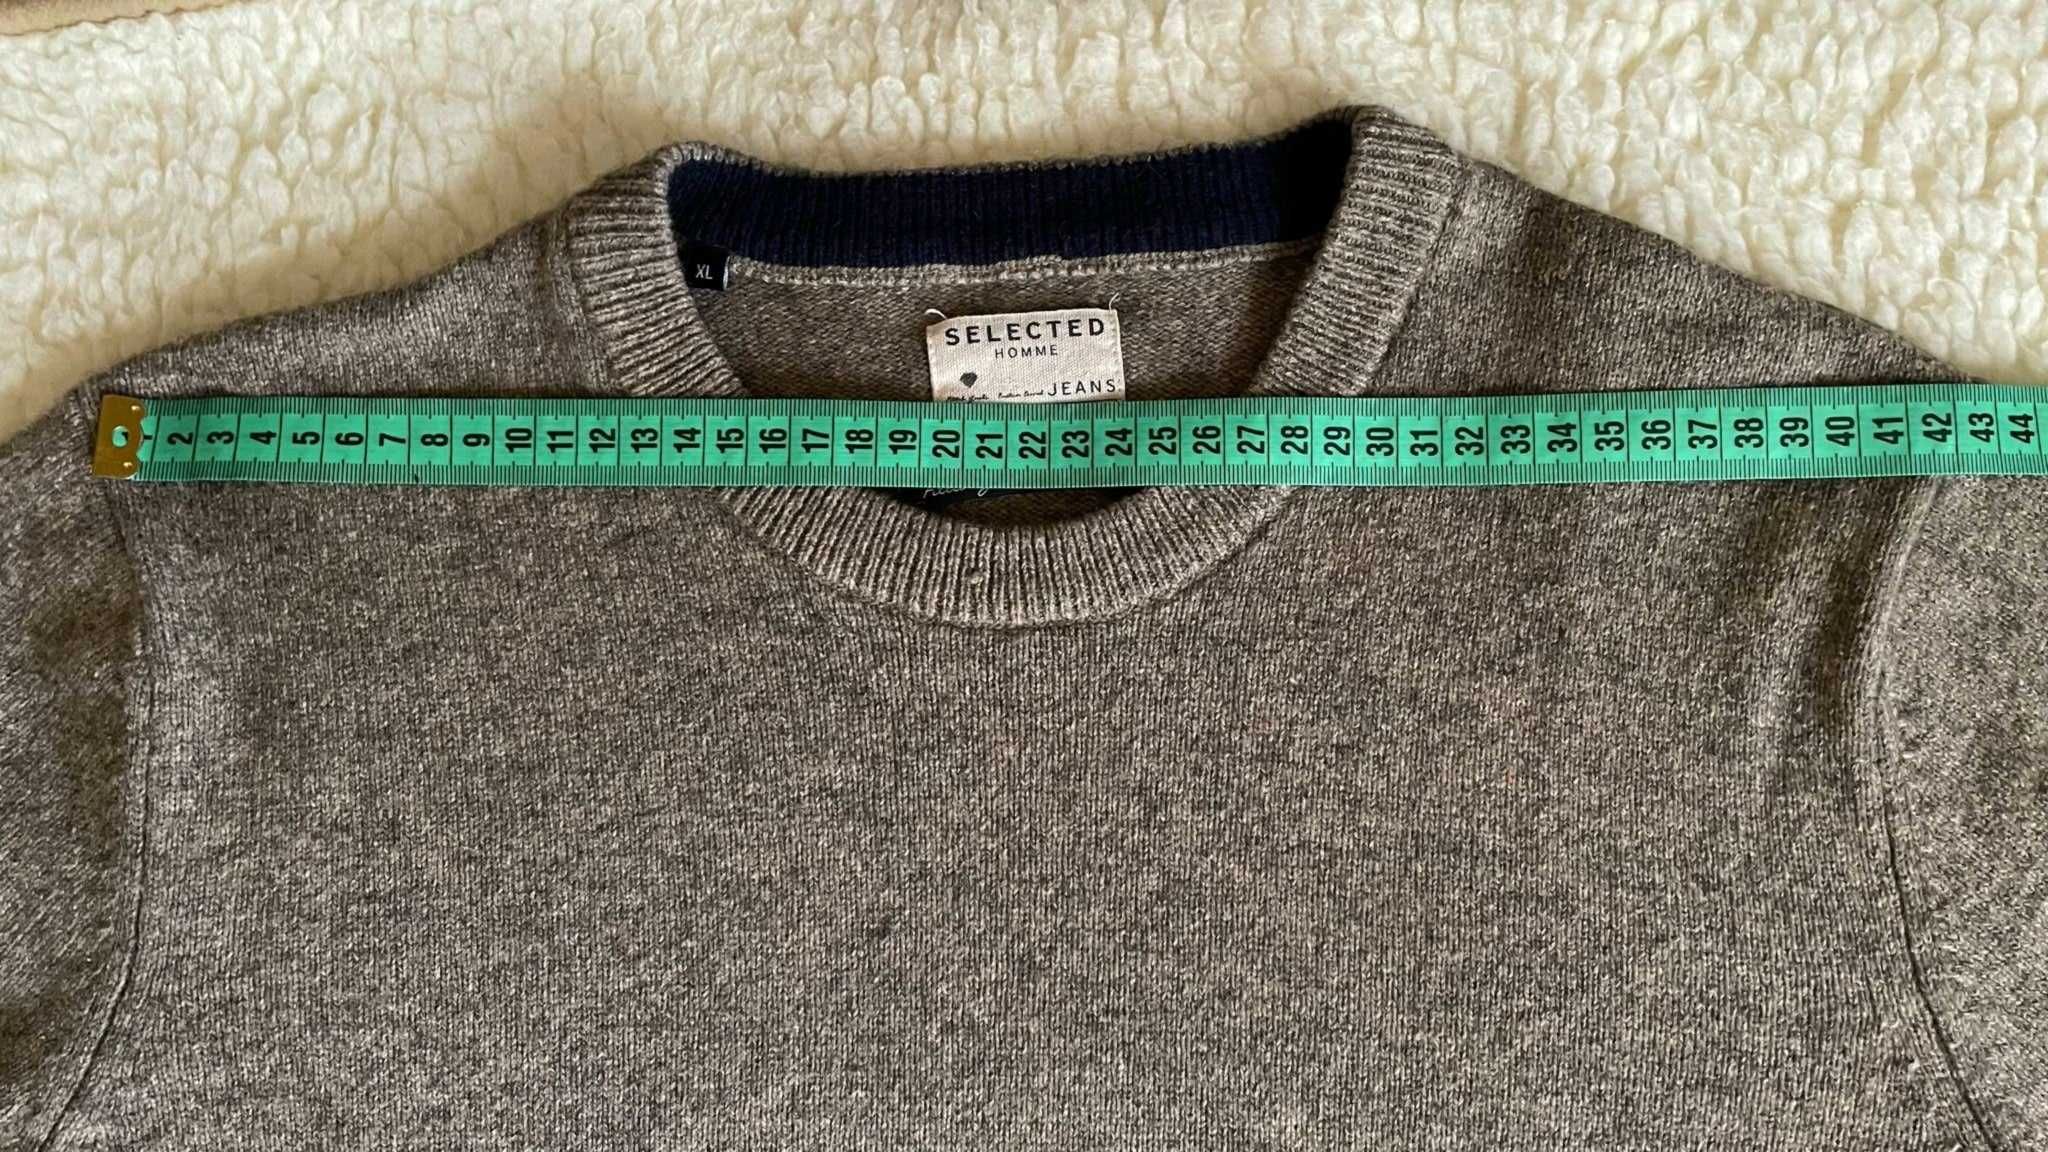 Sweter męski 50% wełna Selected, rozmiar XL.